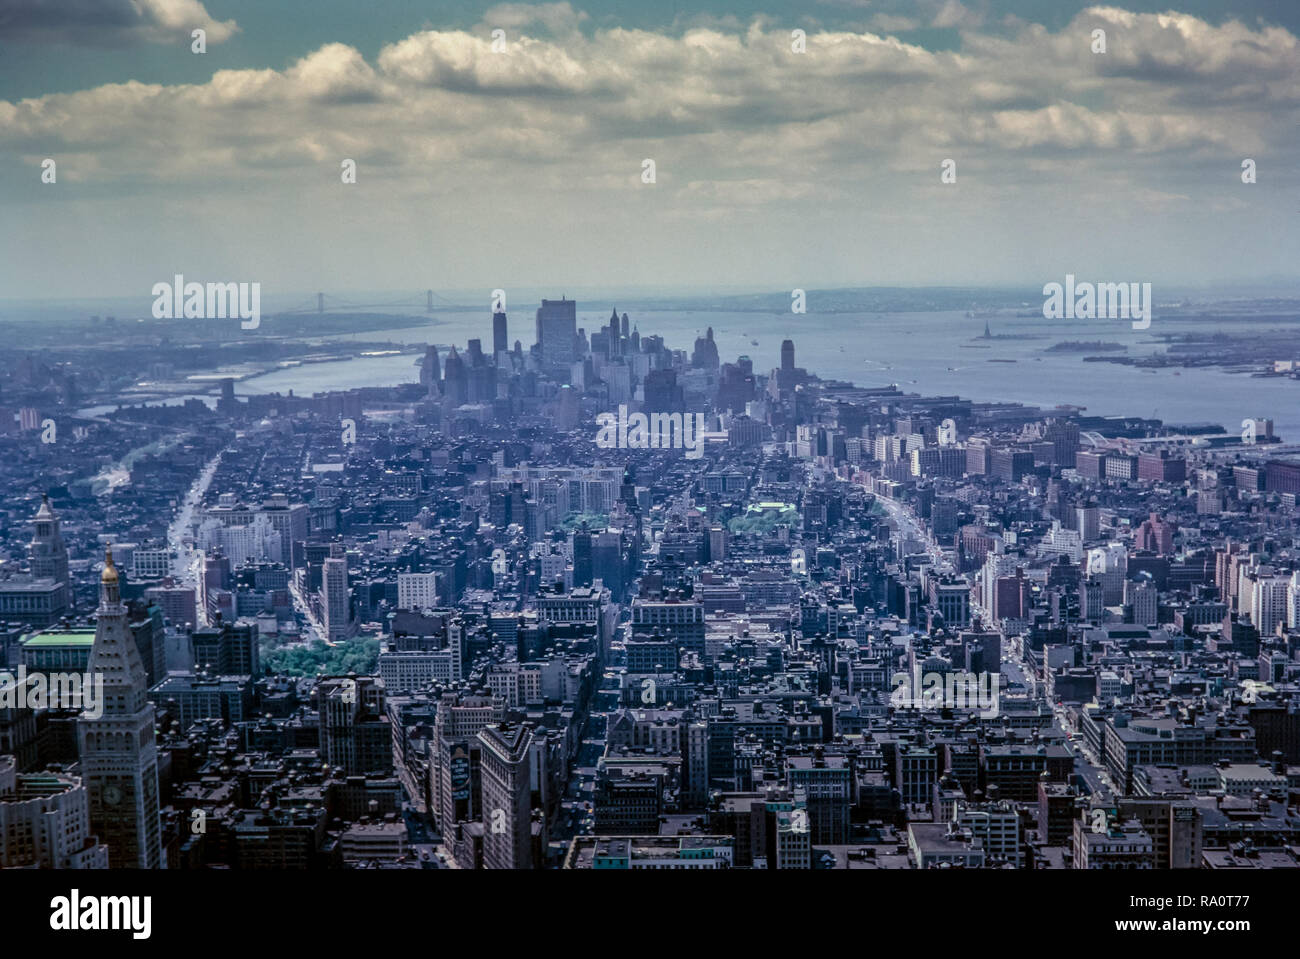 Juin 1964. Vue depuis le haut de l'Empire State Building de New York à la recherche vers le bas Manhattan avec la Statue de la Liberté au loin. Banque D'Images